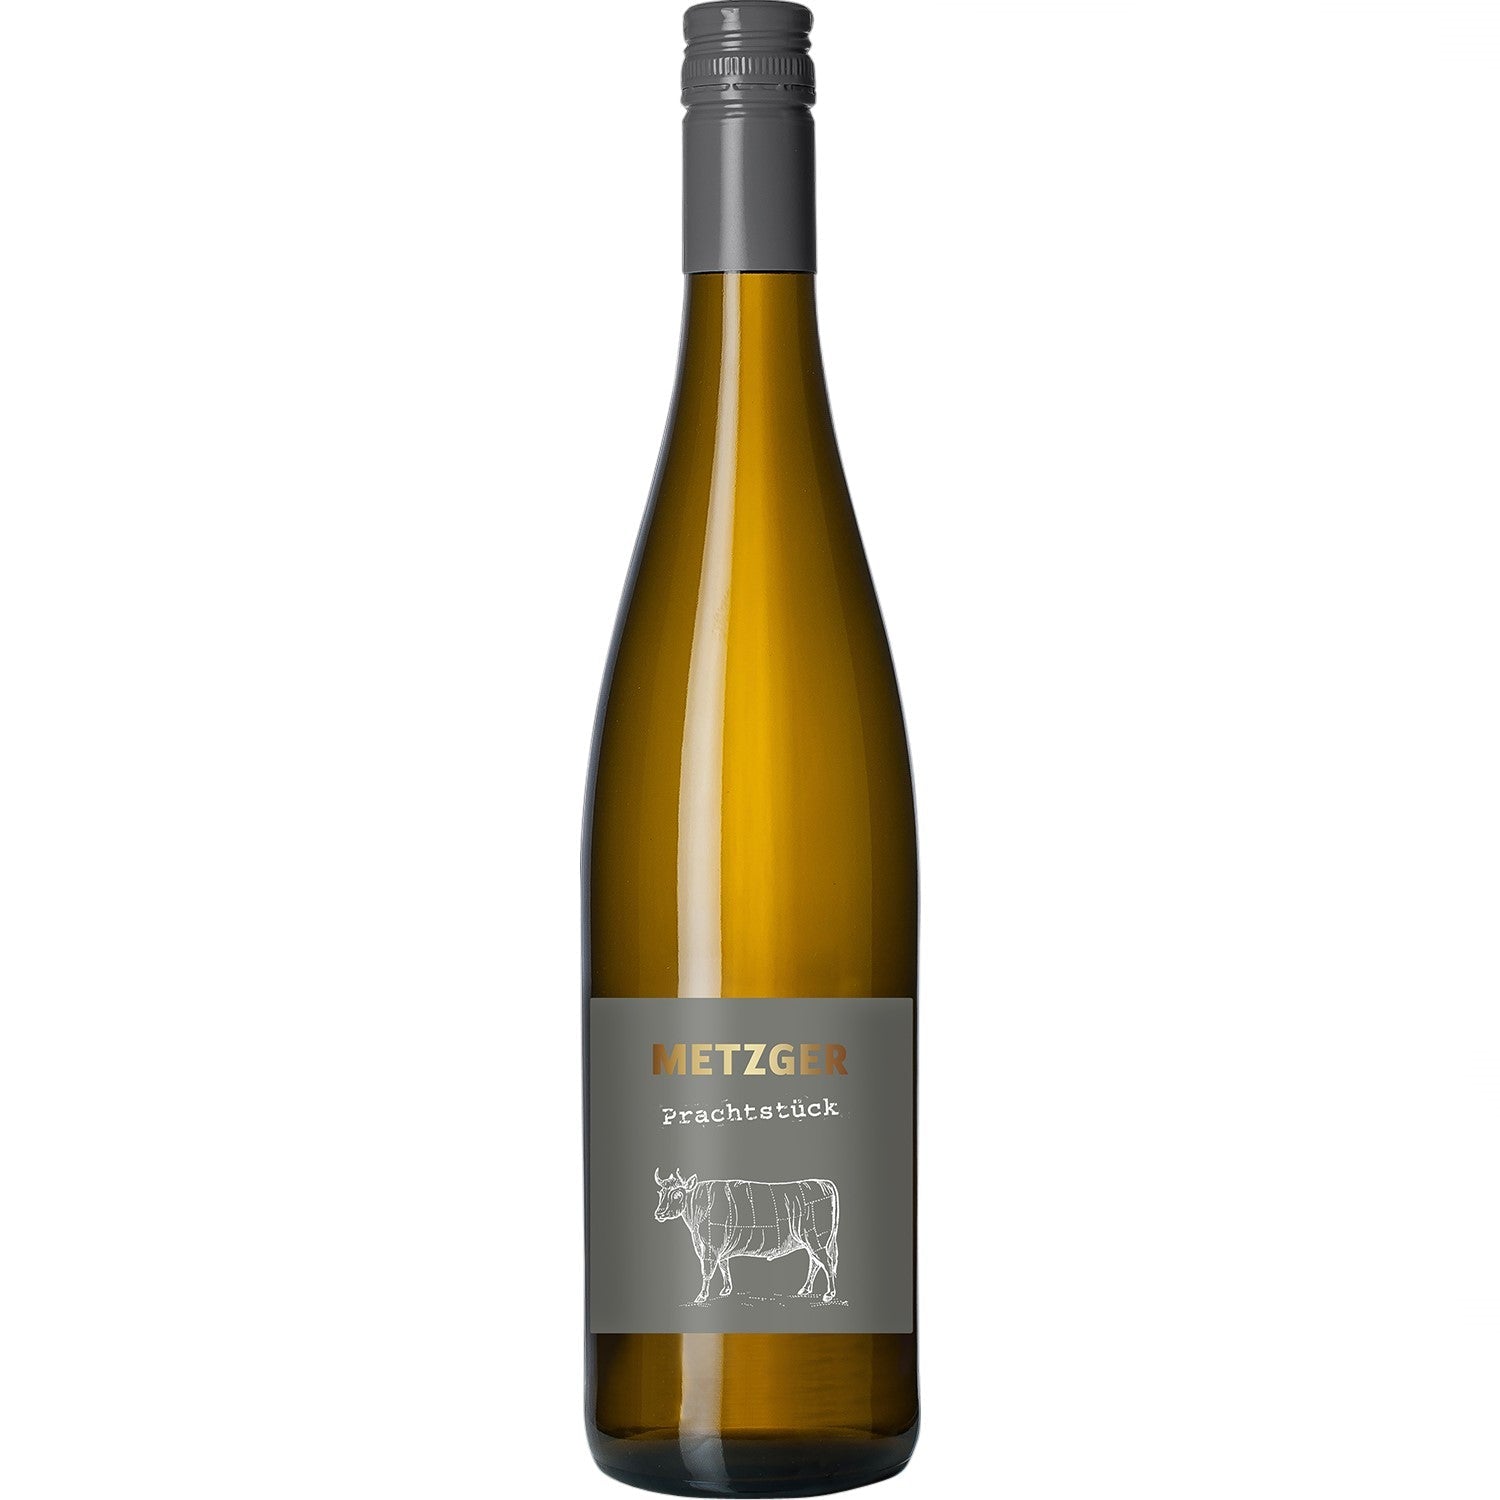 Metzger Prachtstück Weißburgunder Chardonnay Weißwein Wein trocken KuhbA (12 x 0.75l) - Versanel -